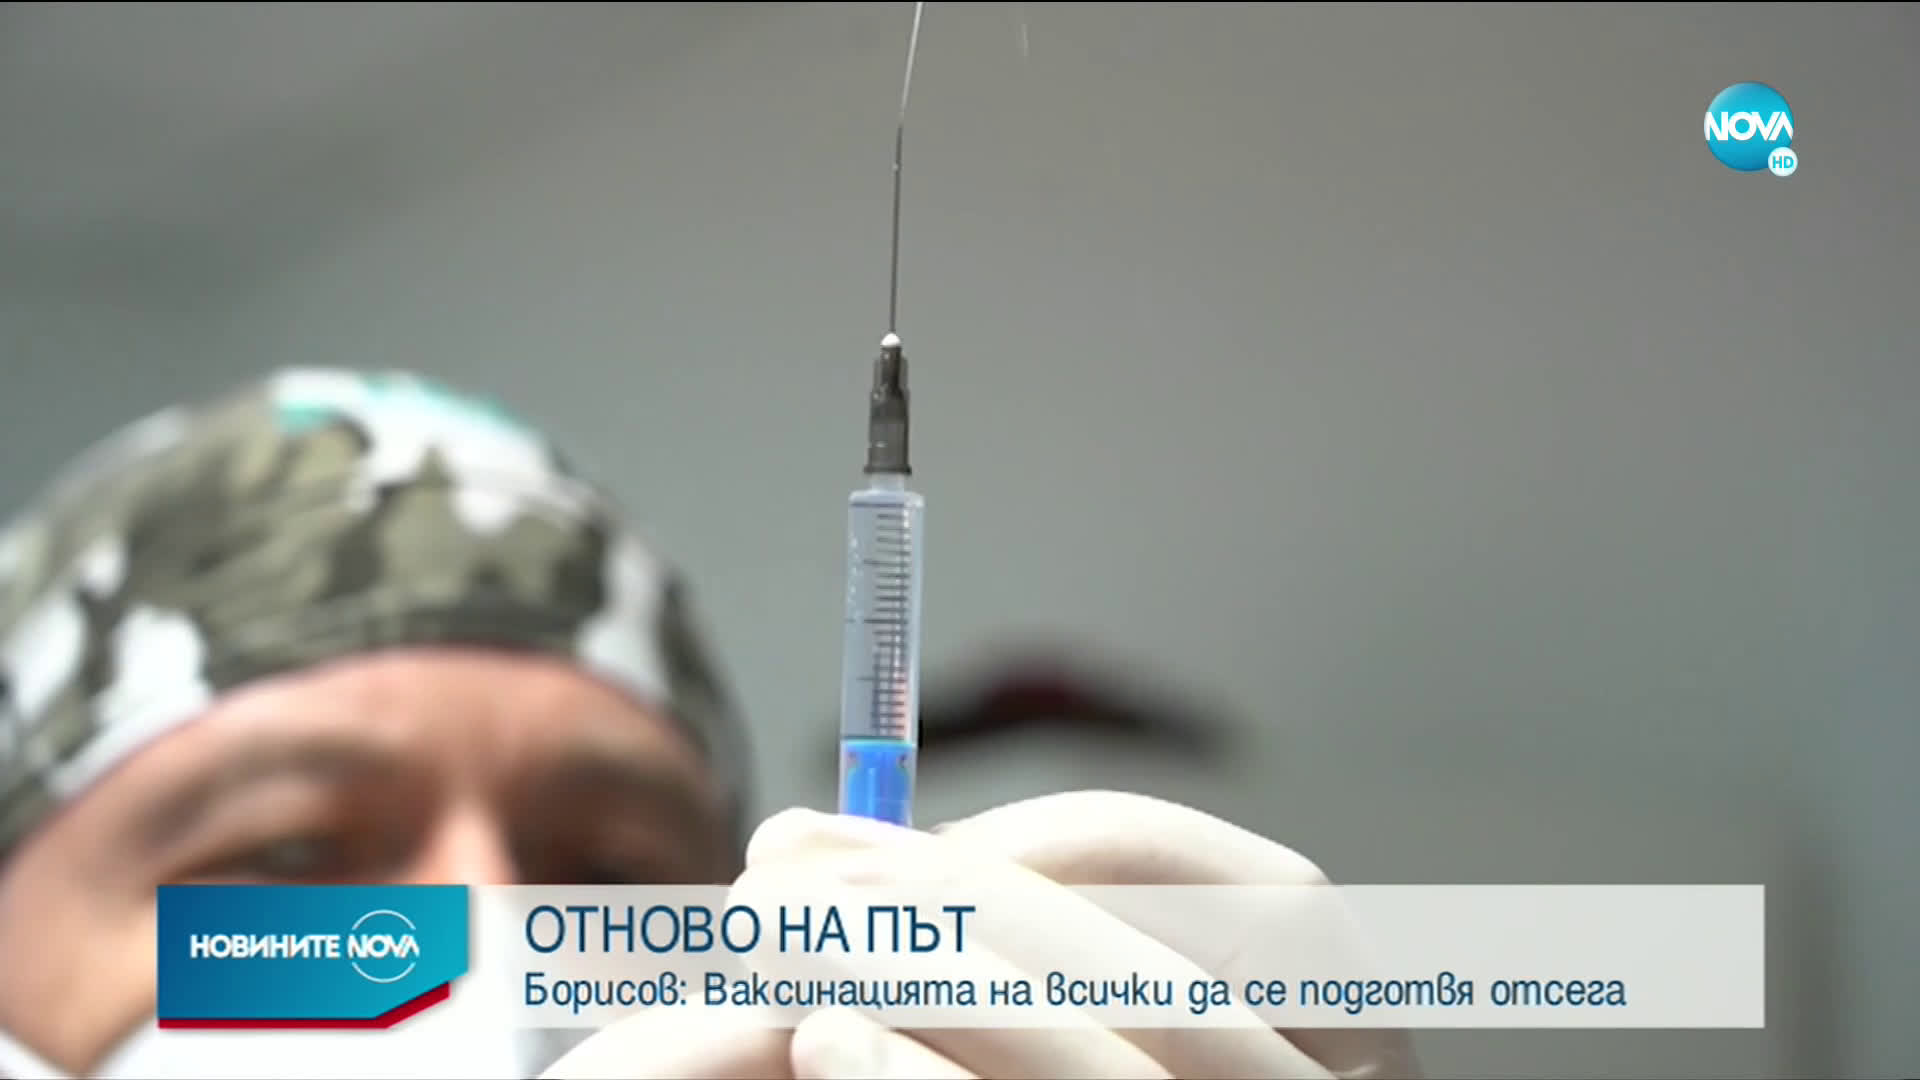 Борисов: Ваксинацията на всички да се подготвя отсега